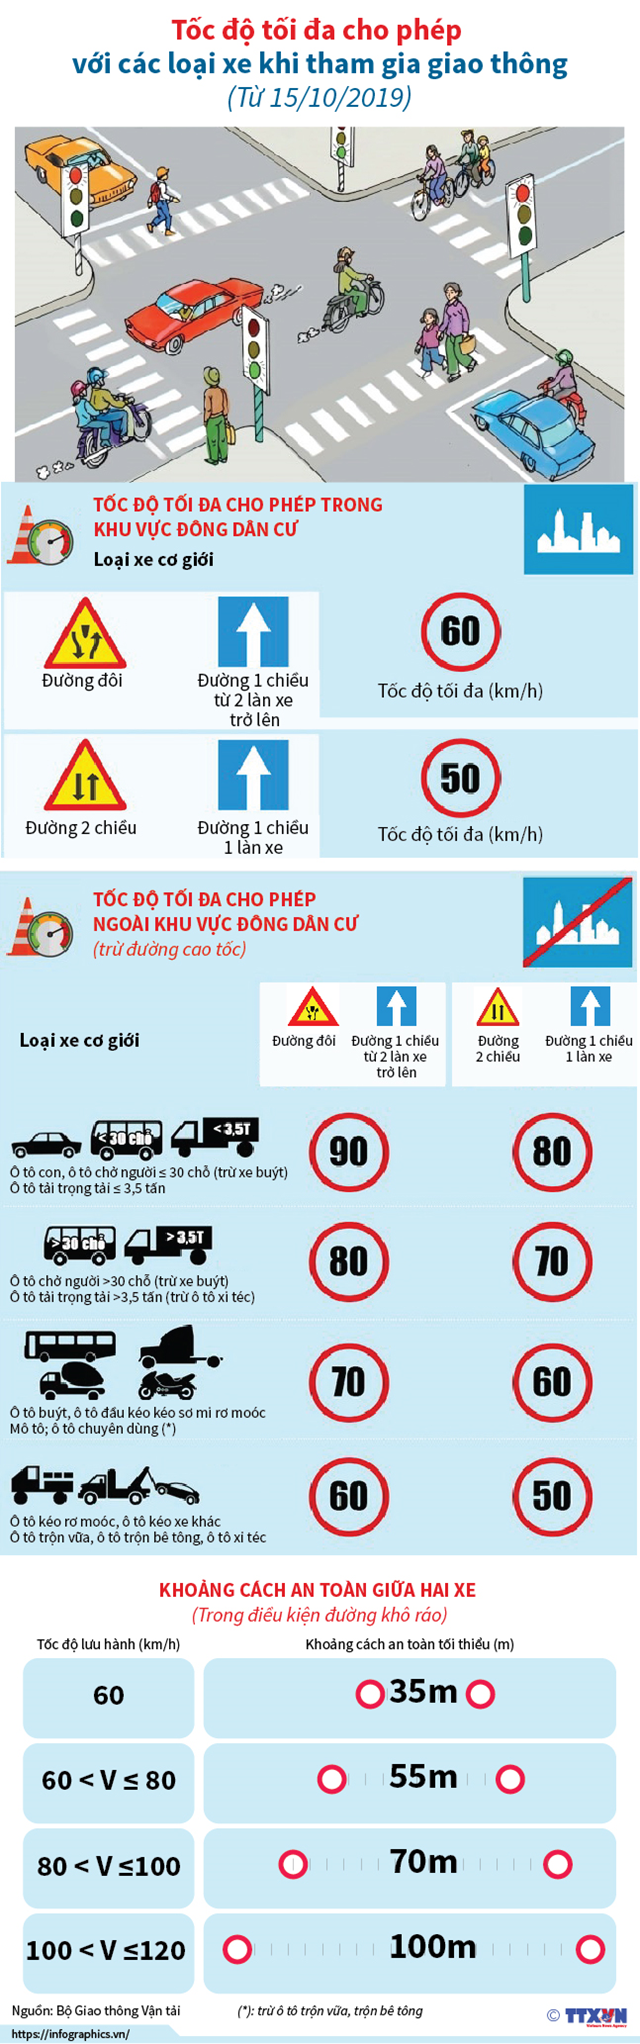  [Infographic] Tốc độ tối đa cho phép với các loại xe khi tham gia giao thông từ 15/10/2019  - Ảnh 1